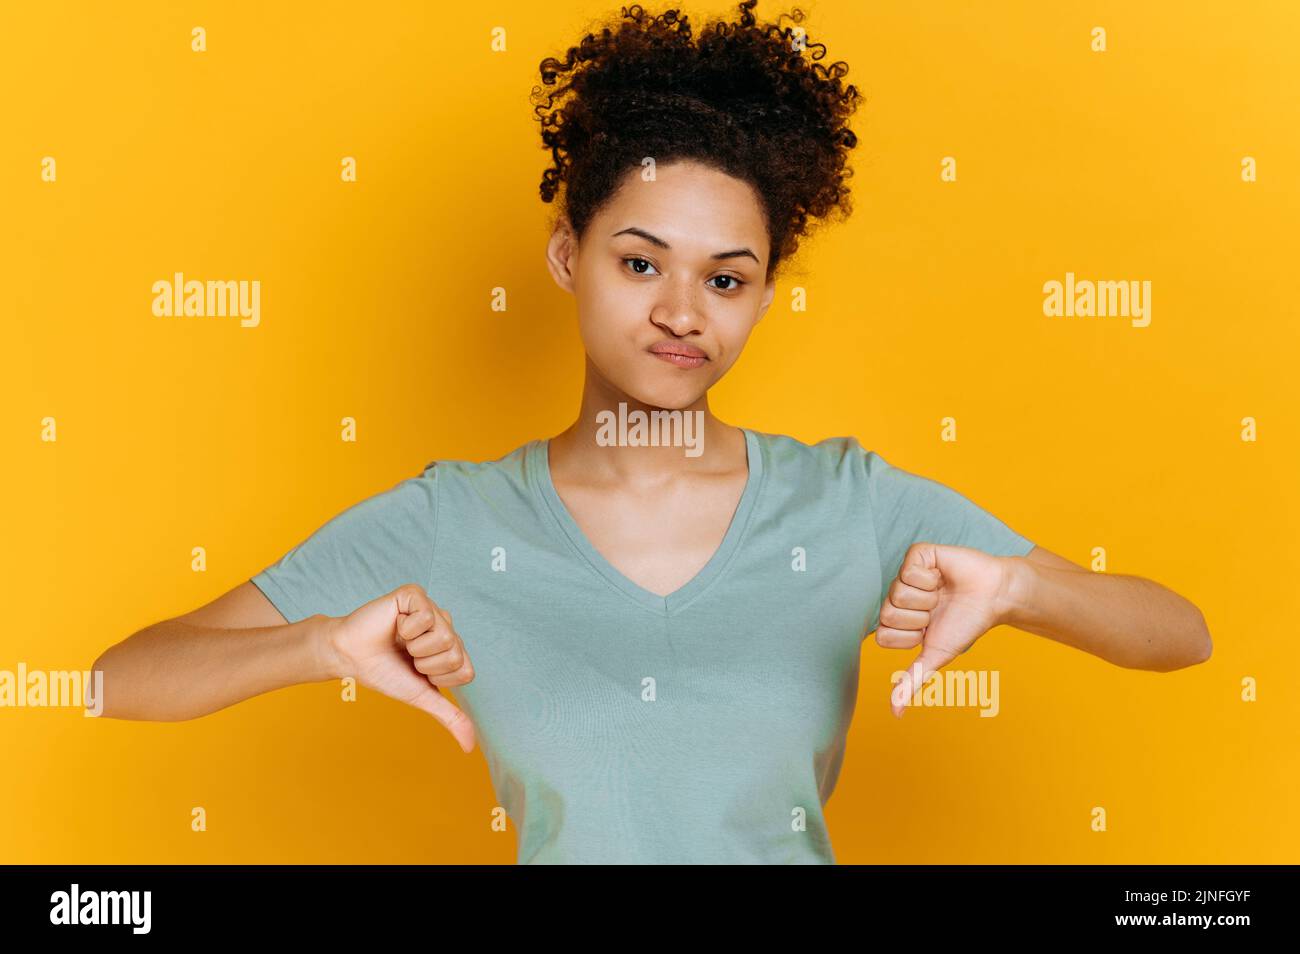 Negativ pessimistische junge afroamerikanische Frau mit lockigen Haaren, in einfachem T-Shirt gekleidet, zeigt Daumen nach unten Geste, blickt auf die Kamera, stehend auf isoliertem orangefarbenem Hintergrund, trauriger Gesichtsausdruck Stockfoto